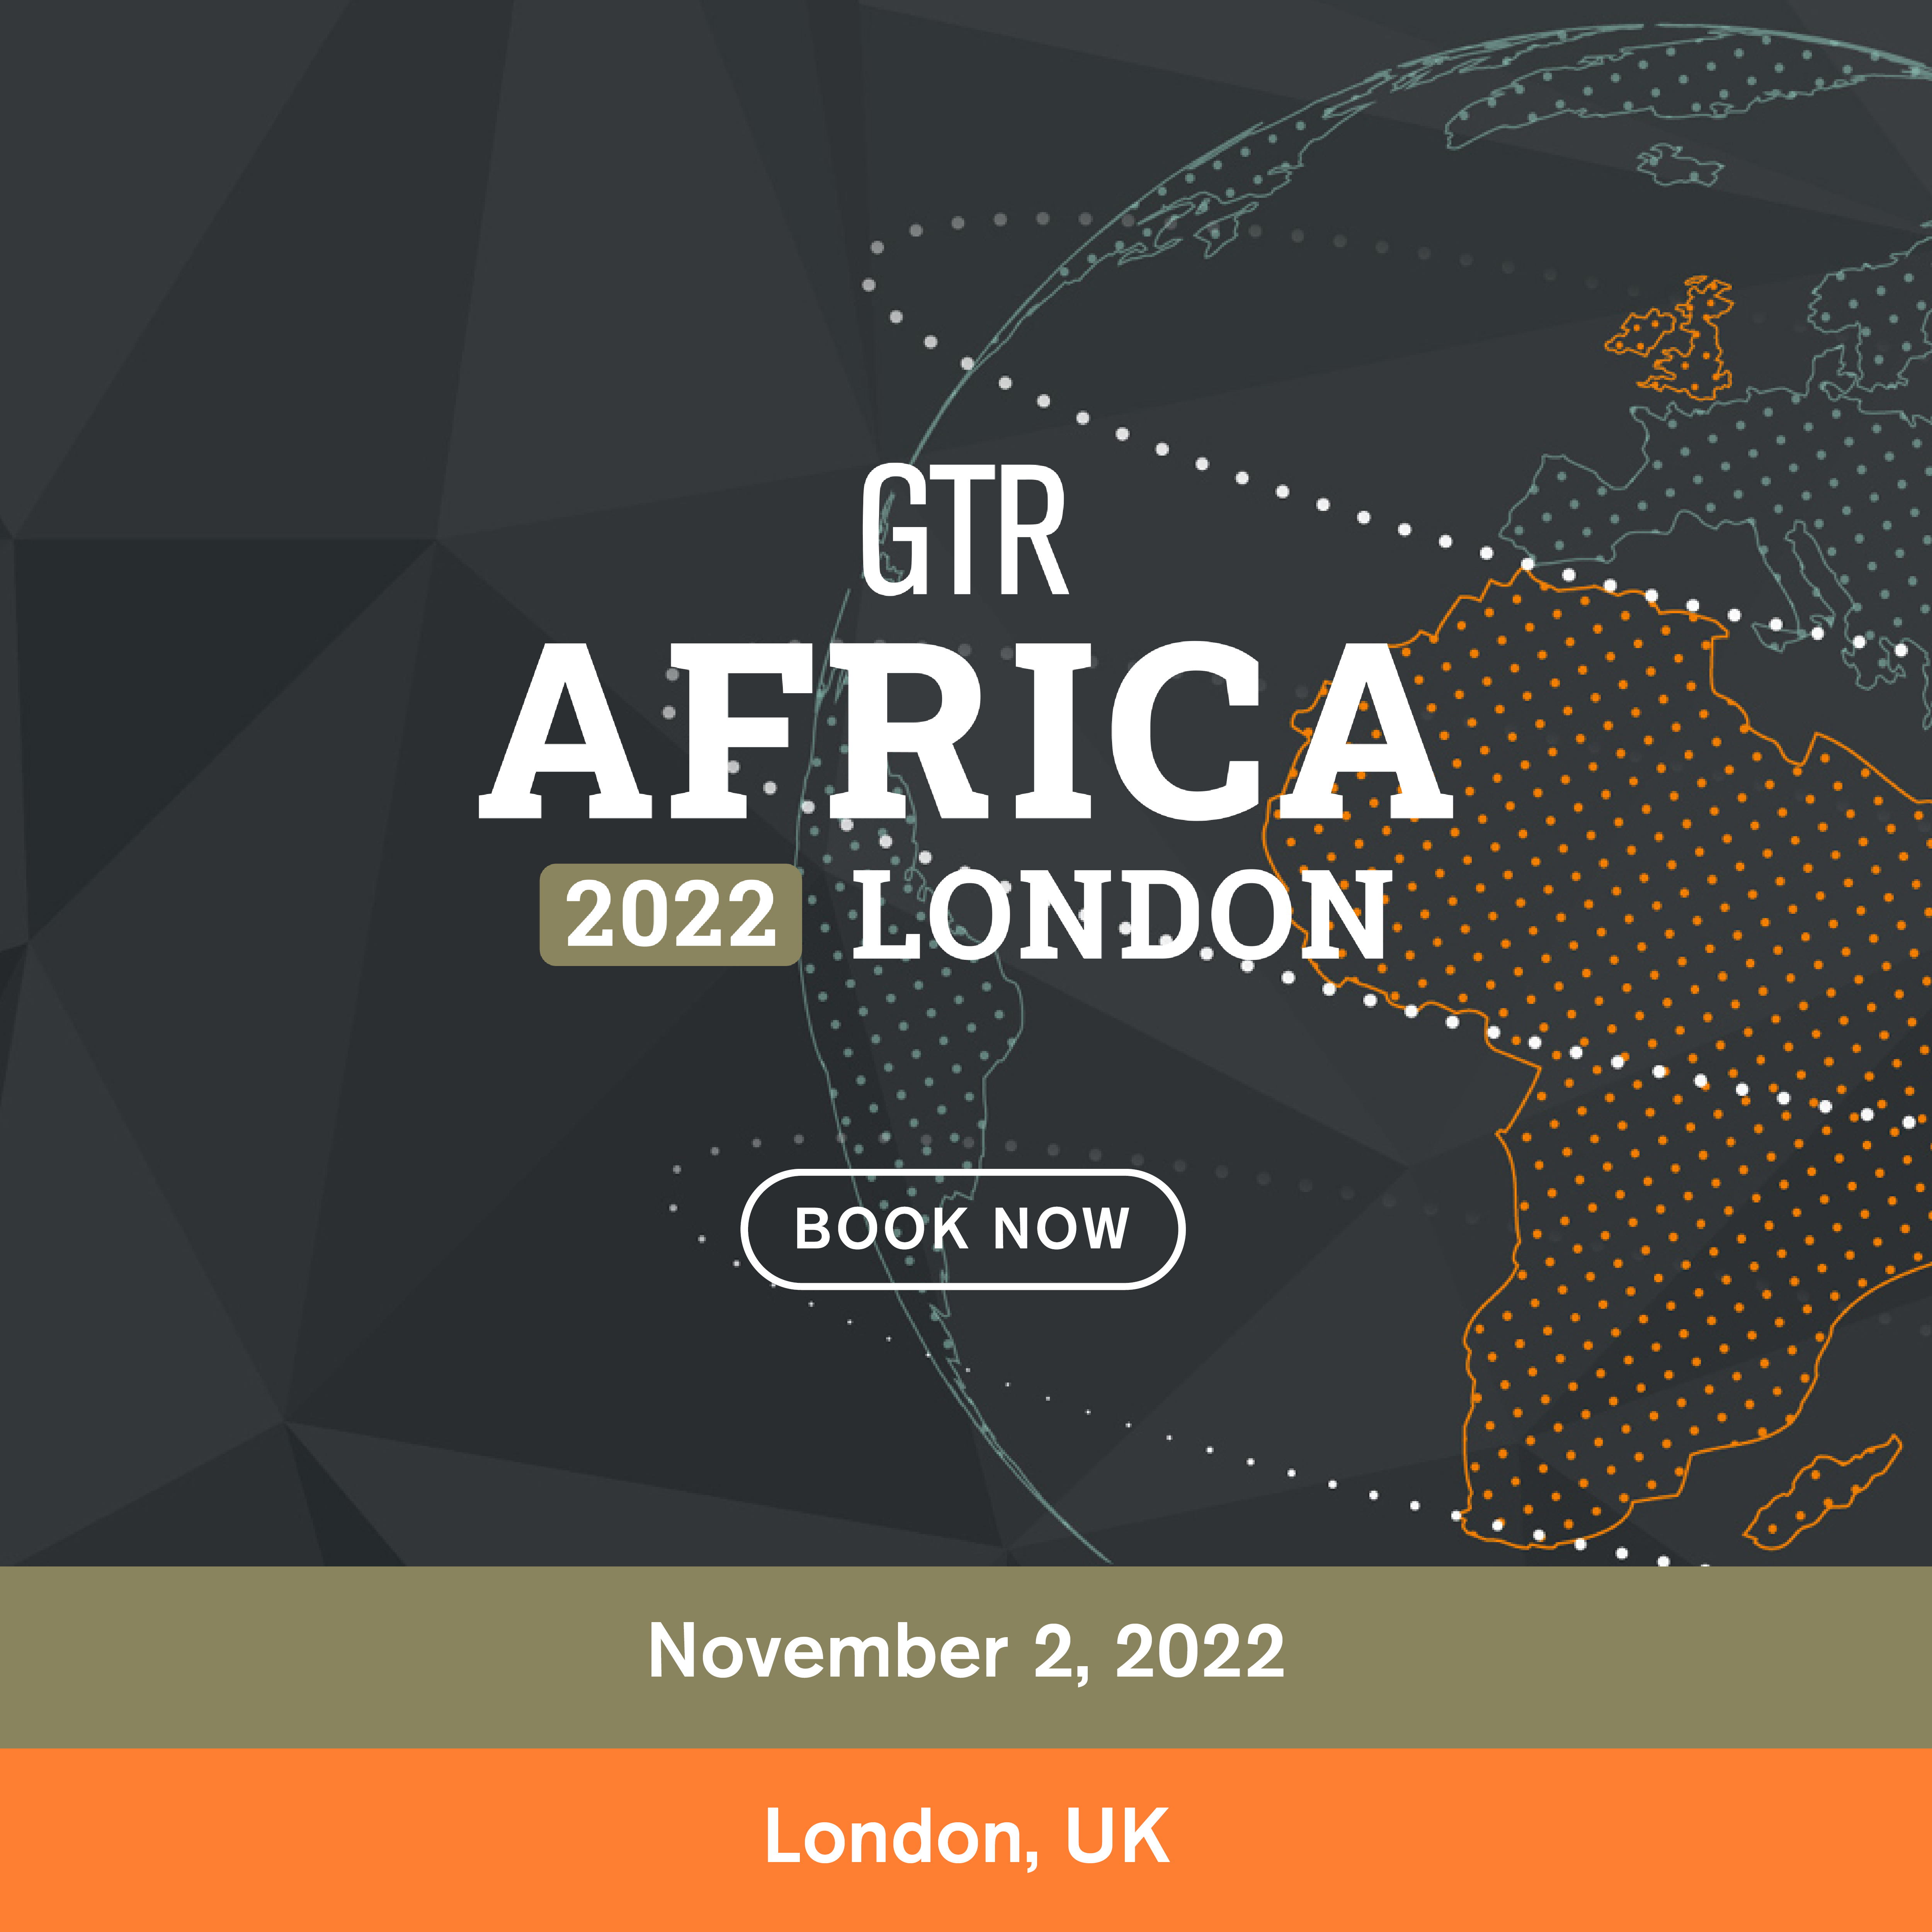 GTR Africa 2022 London